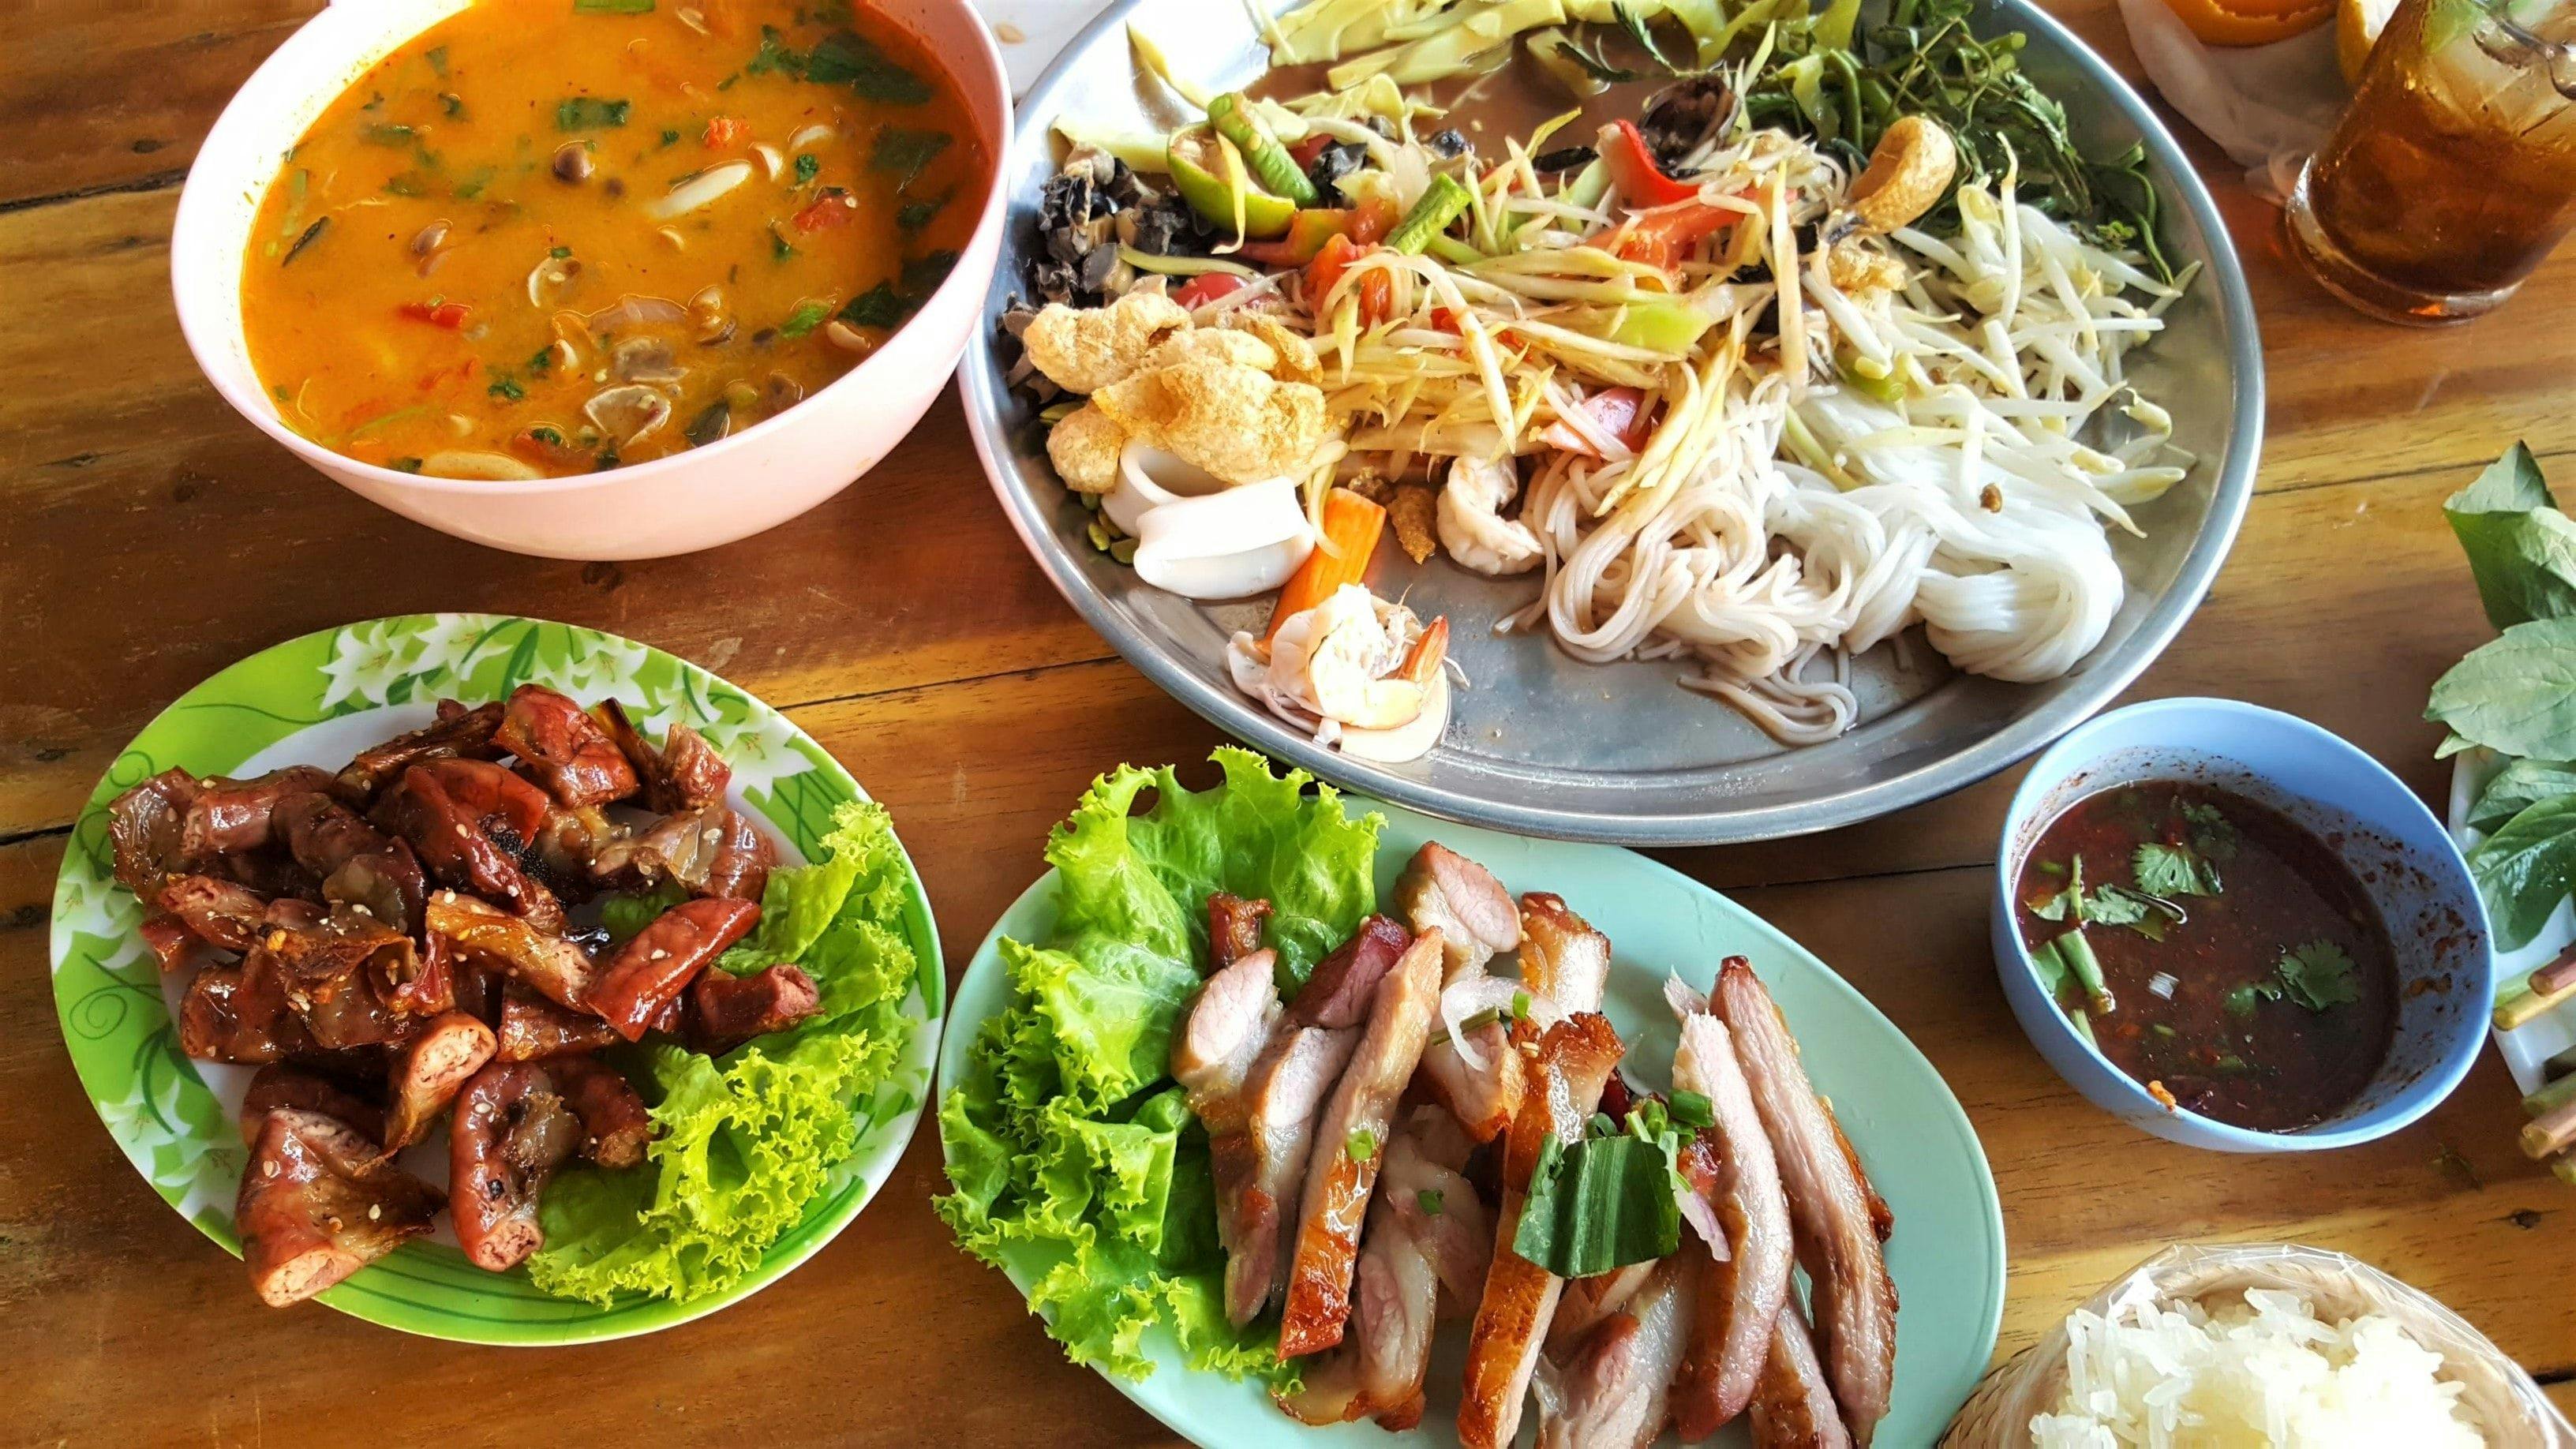 Hvordan er maten i Thailand